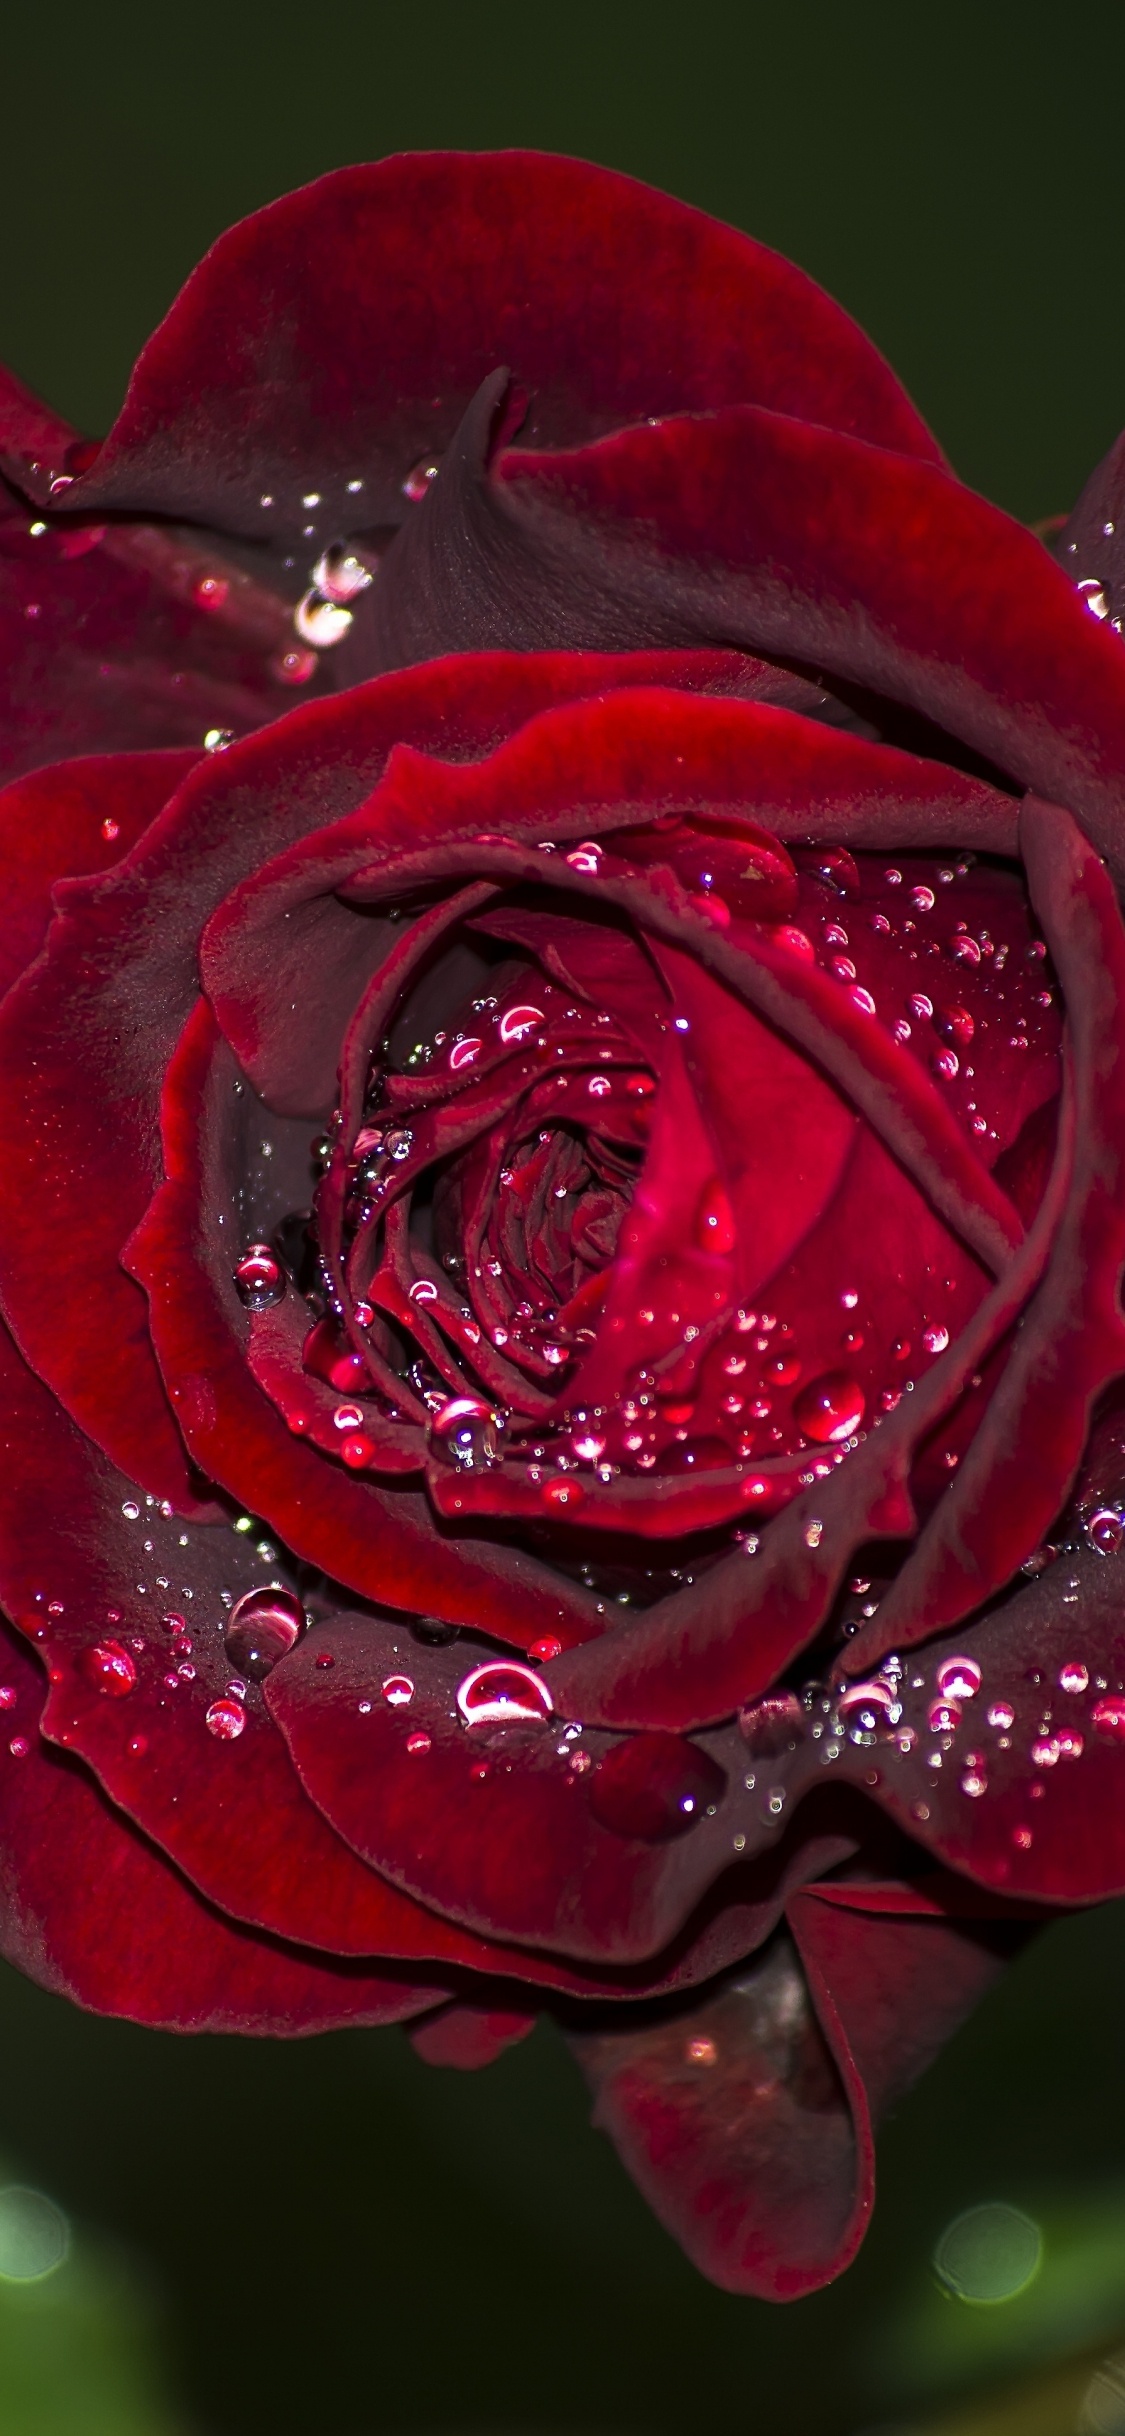 Rose Rouge en Fleurs Avec Des Gouttes de Rosée. Wallpaper in 1125x2436 Resolution